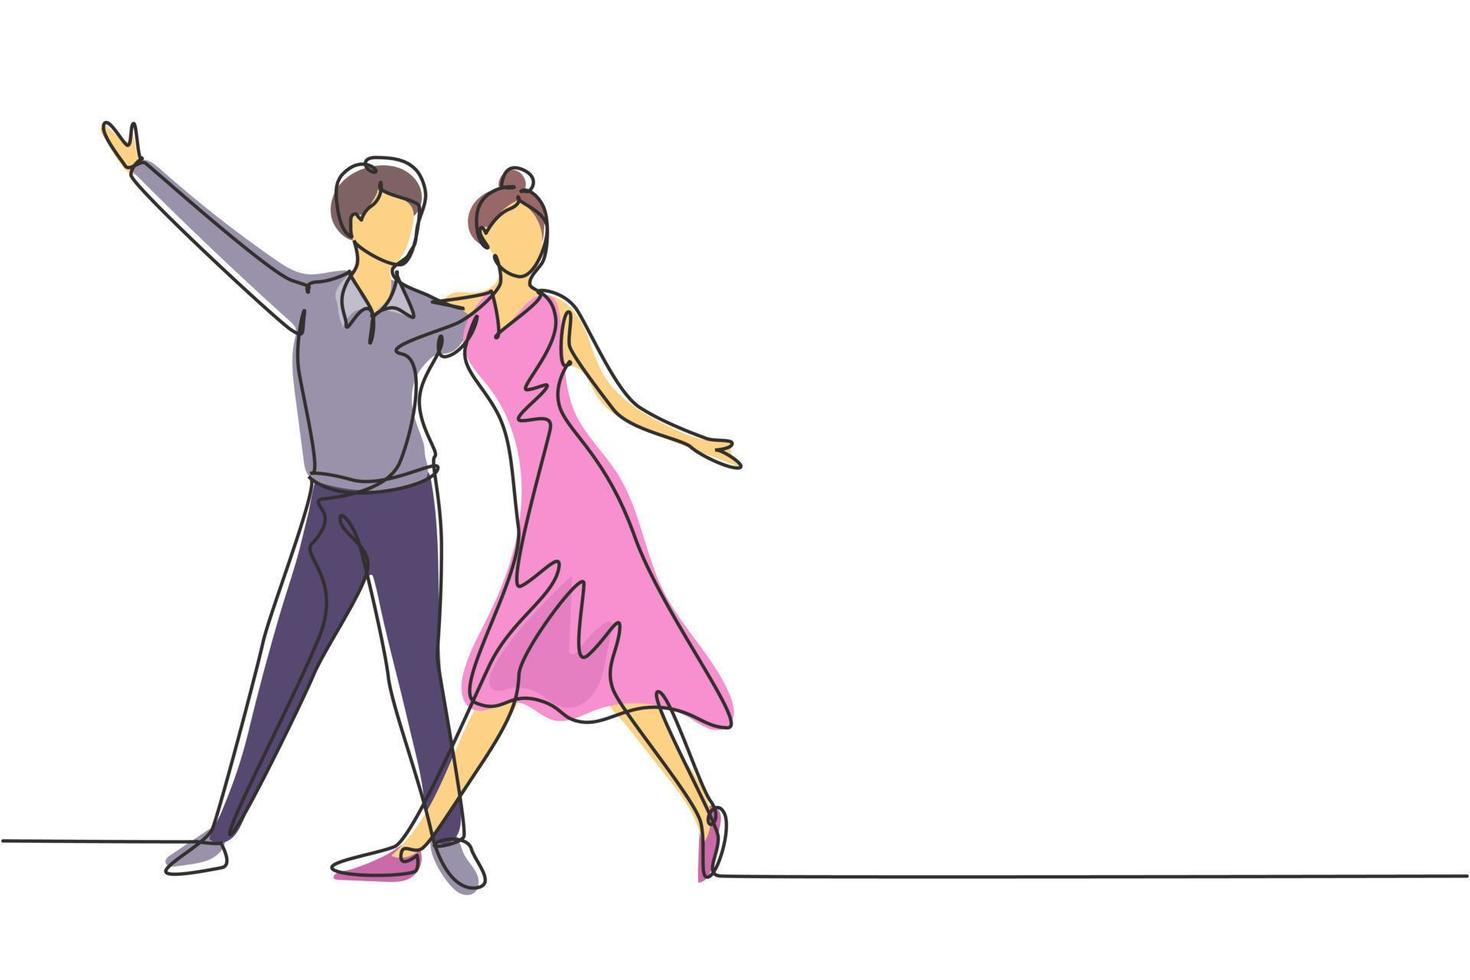 contínua uma linha desenho masculino feminino profissional dançarino casal dançando tango, valsa dança juntos na dança concurso dancefloor. atividade divertida. ilustração gráfica de vetor de desenho de linha única